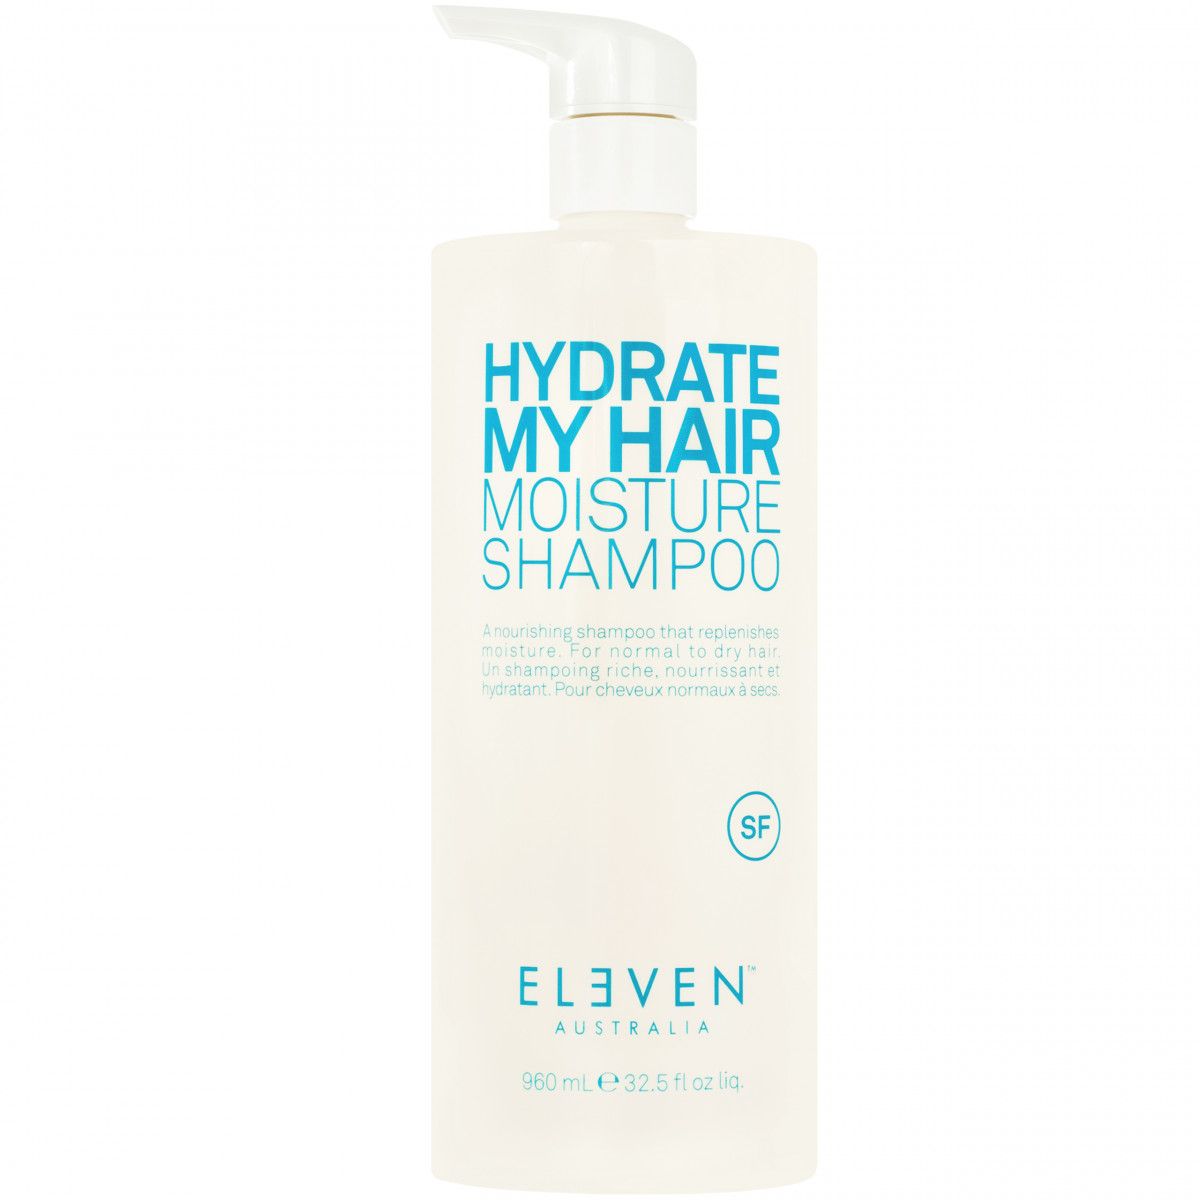 Eleven Australia Hydrate My Hair Moisture Shampoo - nawilżający szampon do włosów, 960ml